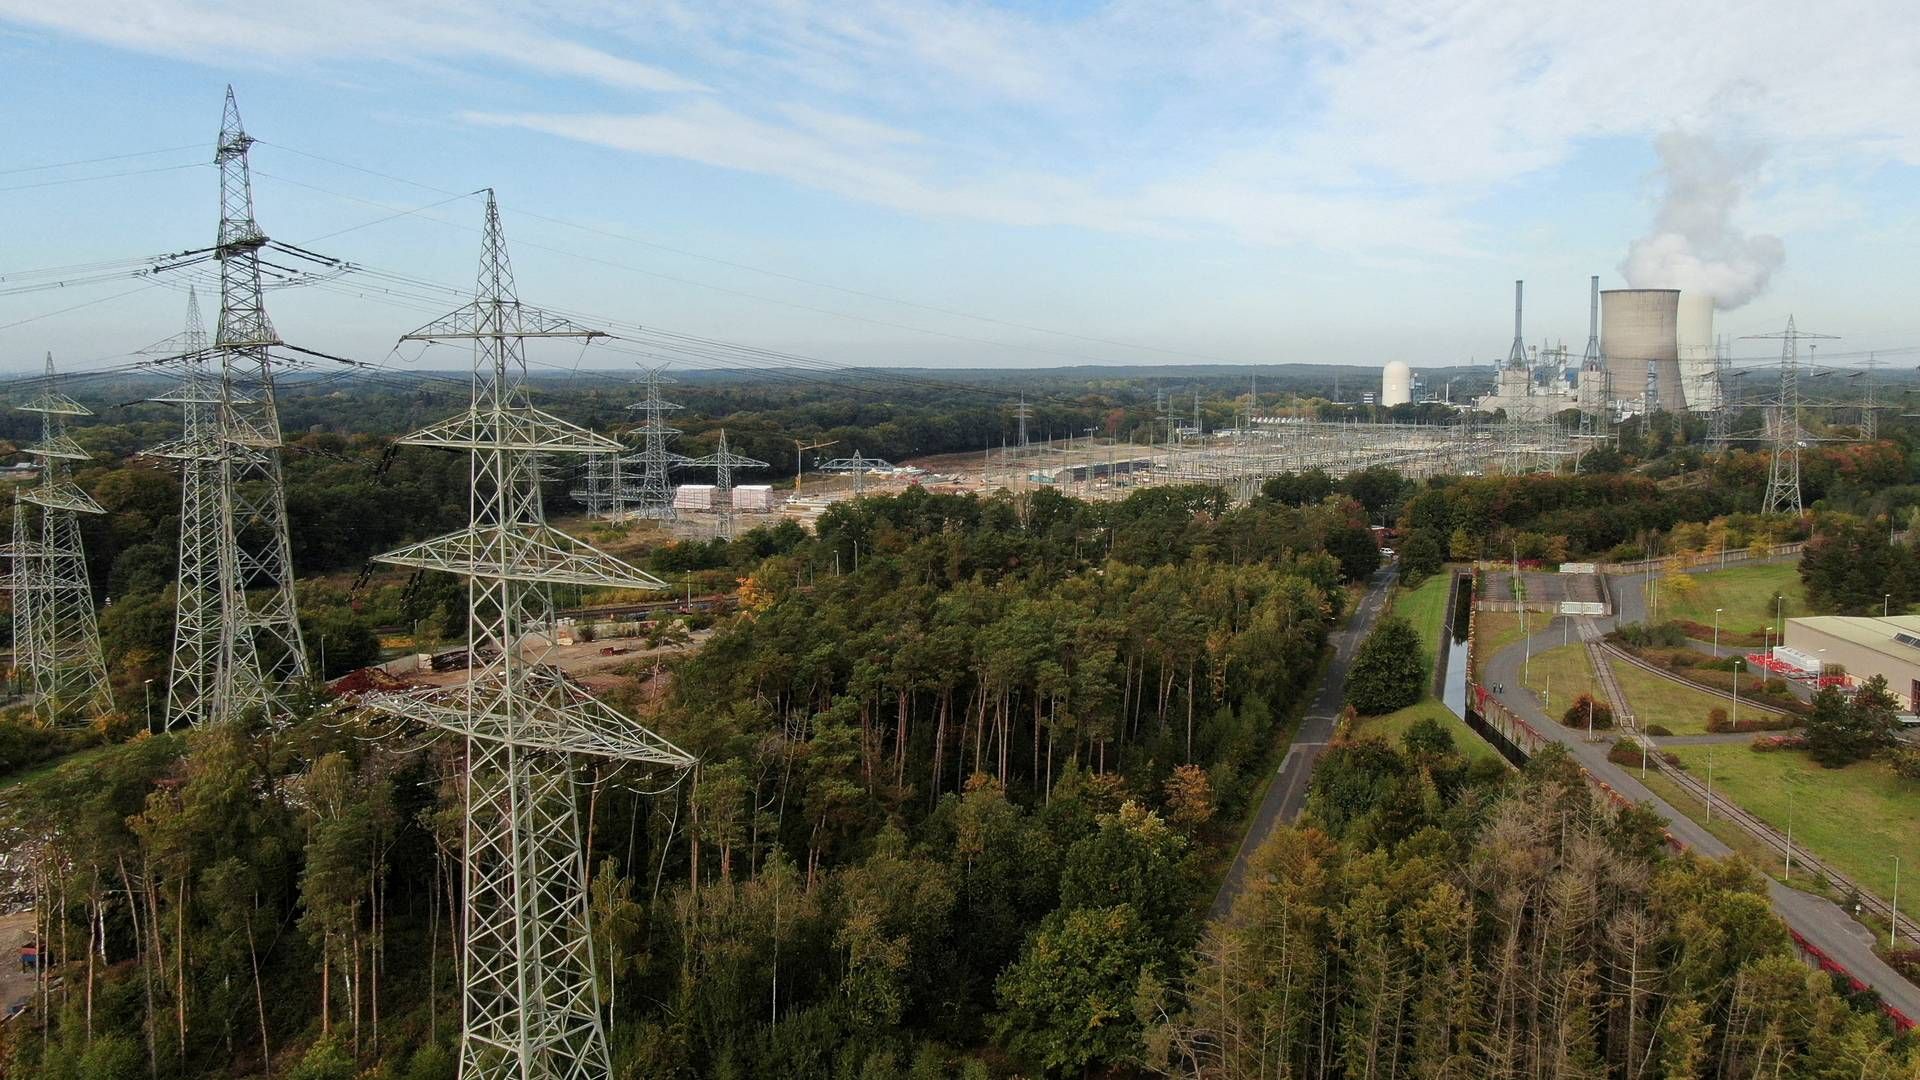 Den kommende lørdag afkobles atomkraftværket Isar 2 i Bayern sammen to andre tyske værker fra landets energinet, og så er det endegyldigt slut med atomkraft i Tyskland. | Foto: Stephane Nitschke